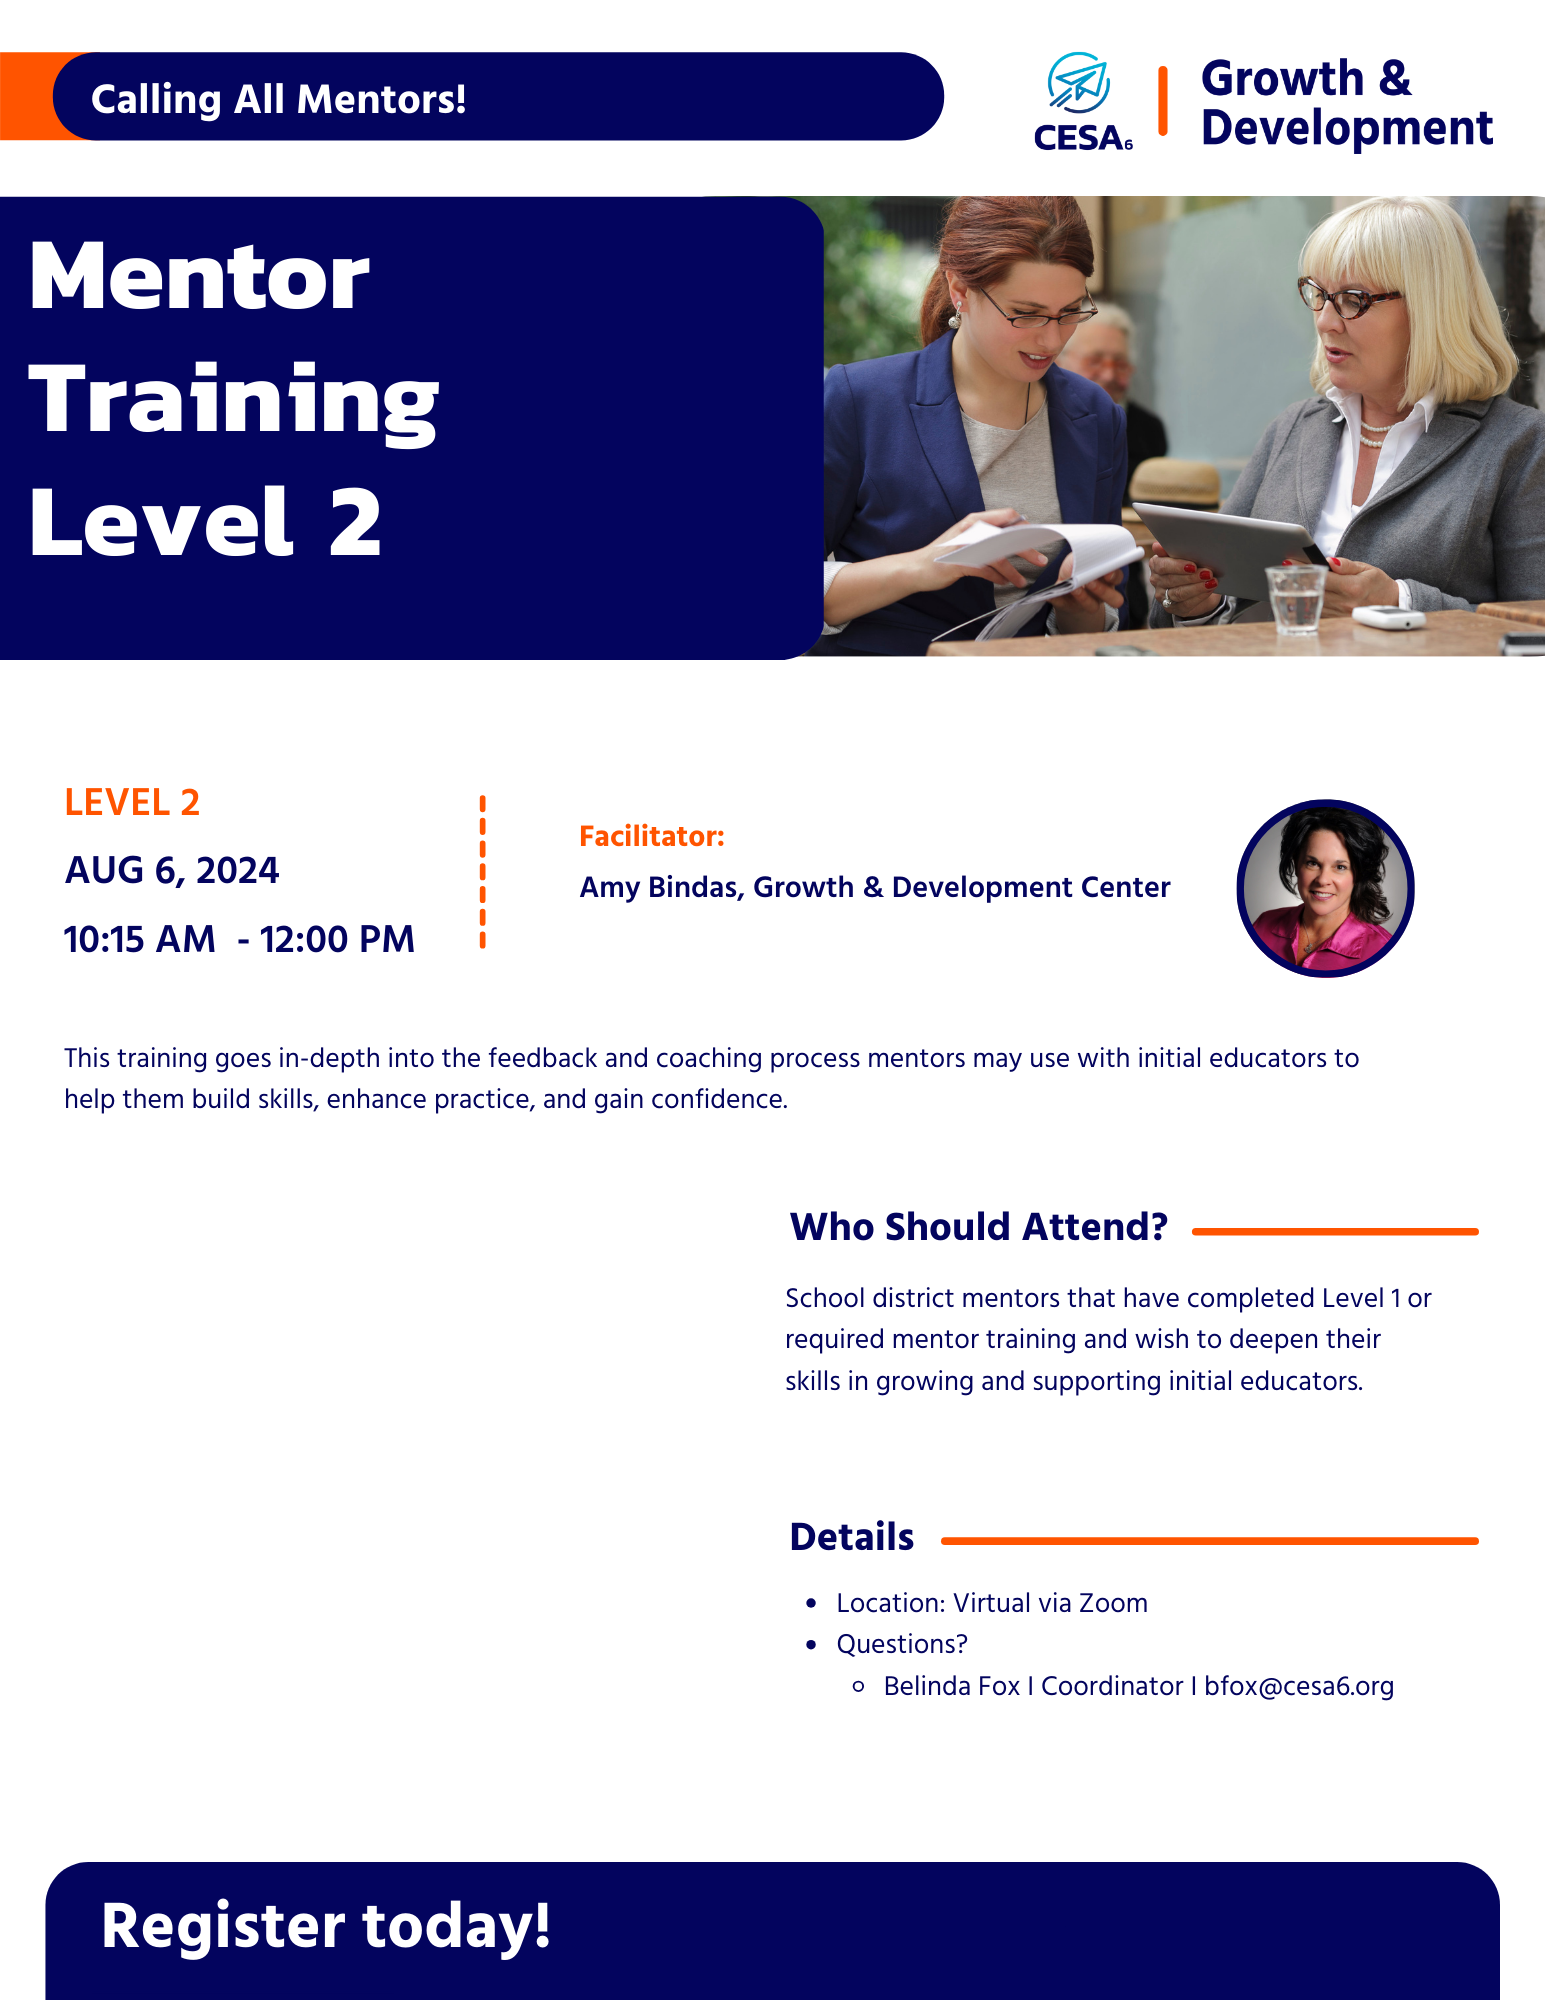 Register for Mentor Training Level 2